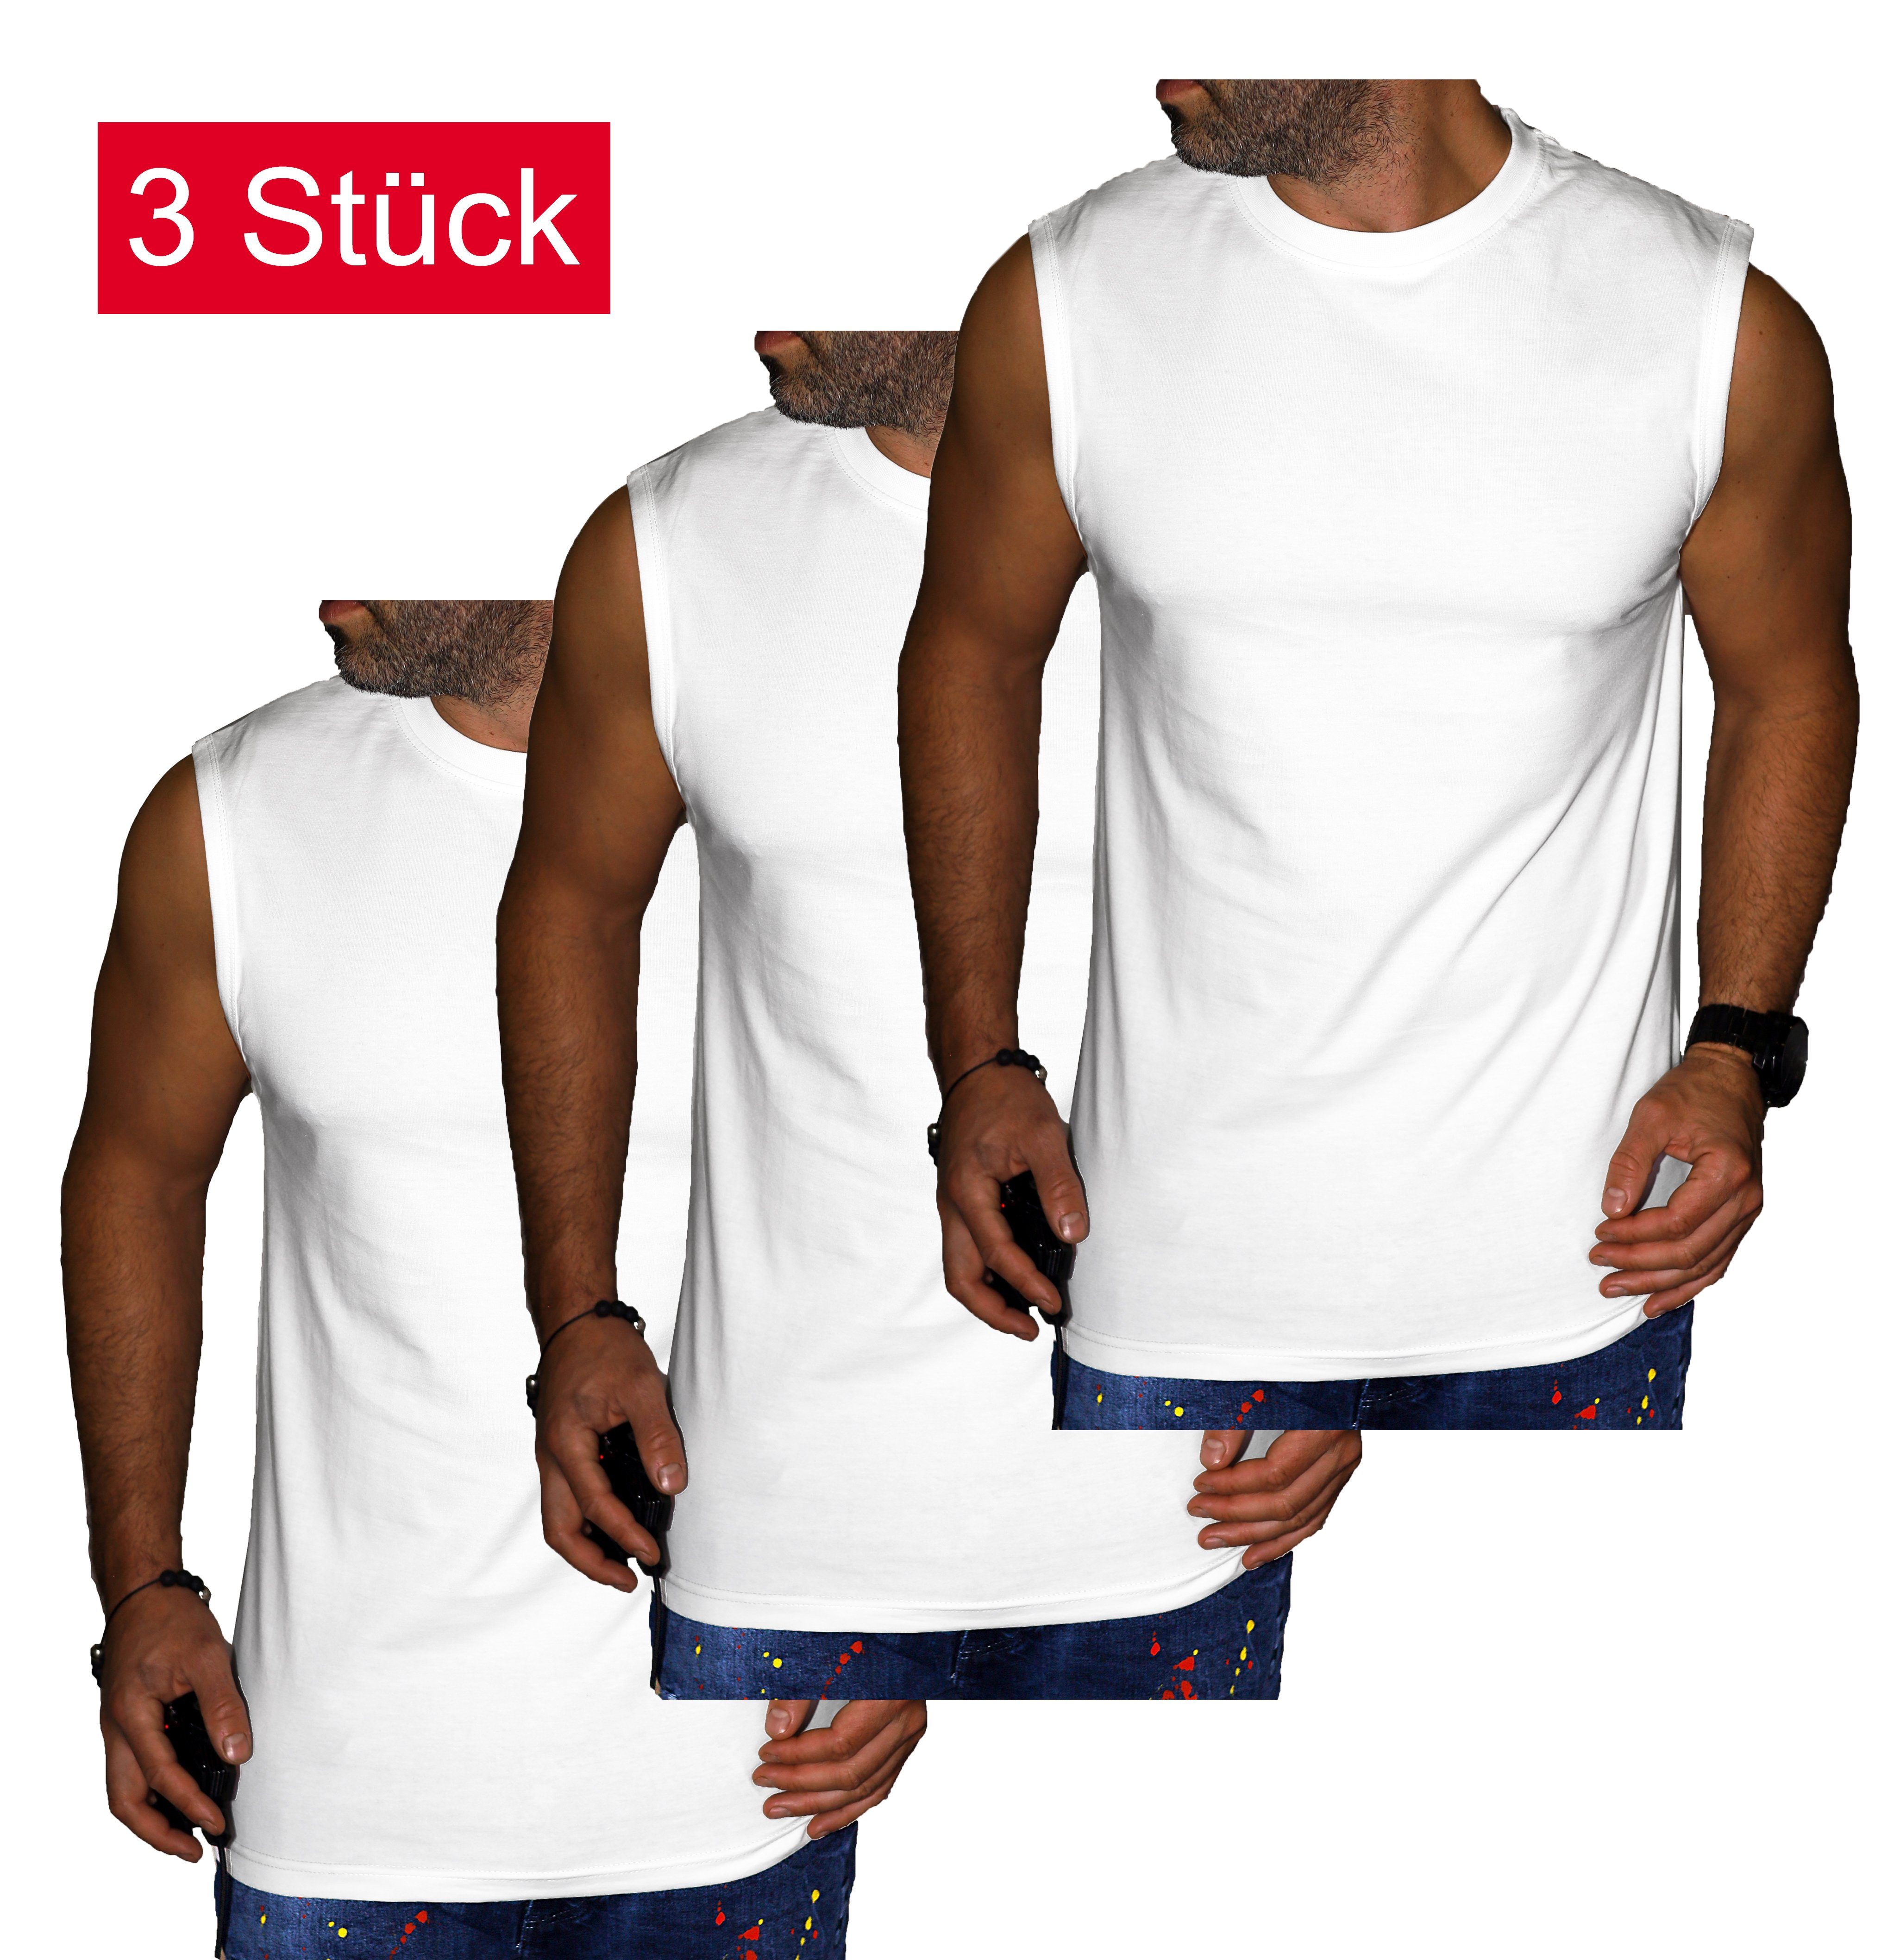 RMK Unterhemd Unterhemd Muscleshirt Tanktop Ärmellos Shirt Uni Farben (Packung, 3er-Set) aus reiner Baumwolle, mit Rundhalsausschnitt Weiß